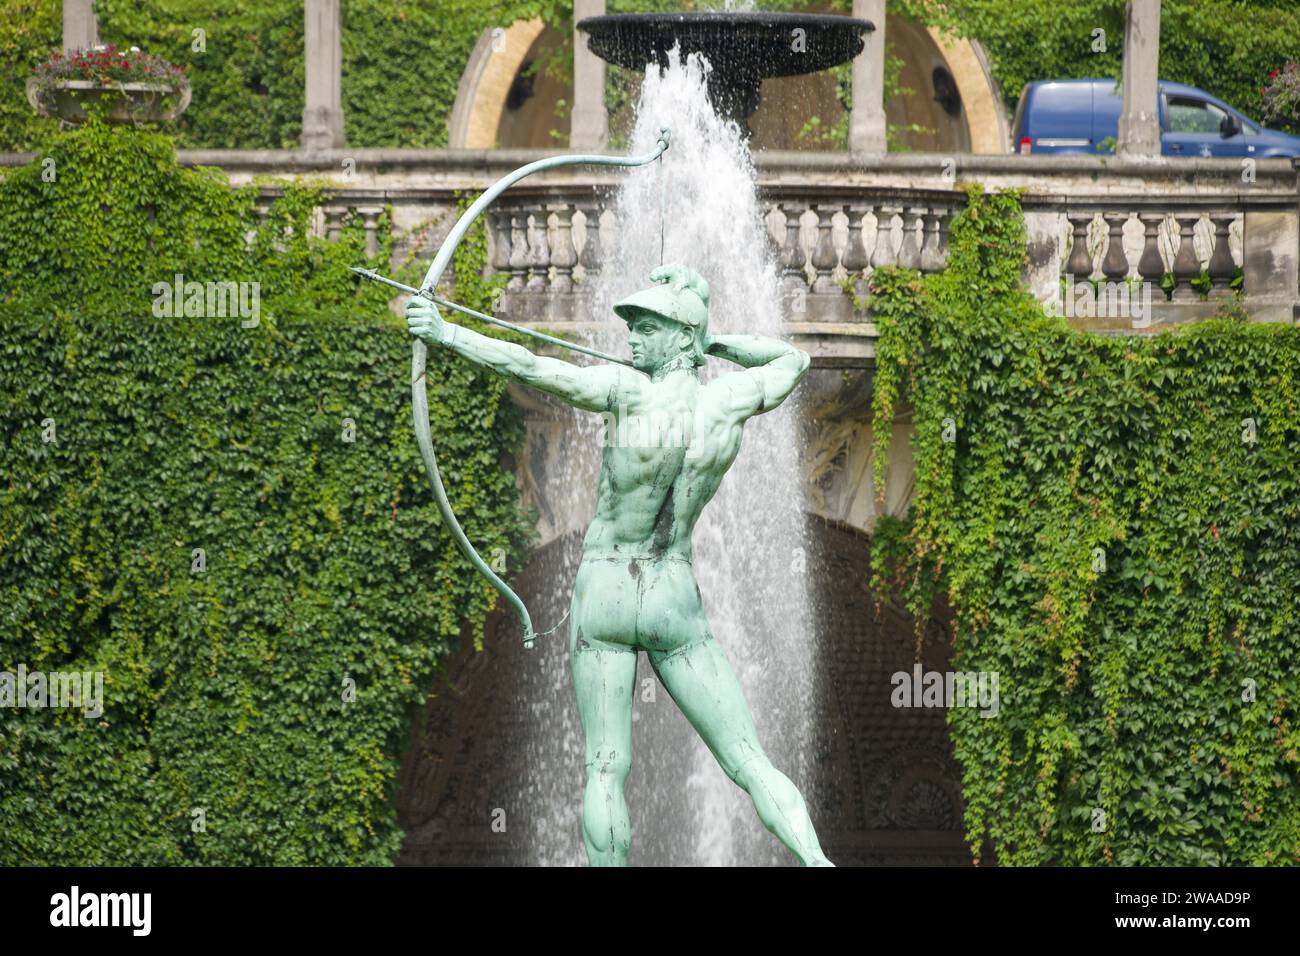 Questa vivace scultura di un arciere, adagiata su uno sfondo di vegetazione lussureggiante e di una fontana che scorre, racchiude lo spirito vibrante dell'atrio pubblico di Potsdam Foto Stock